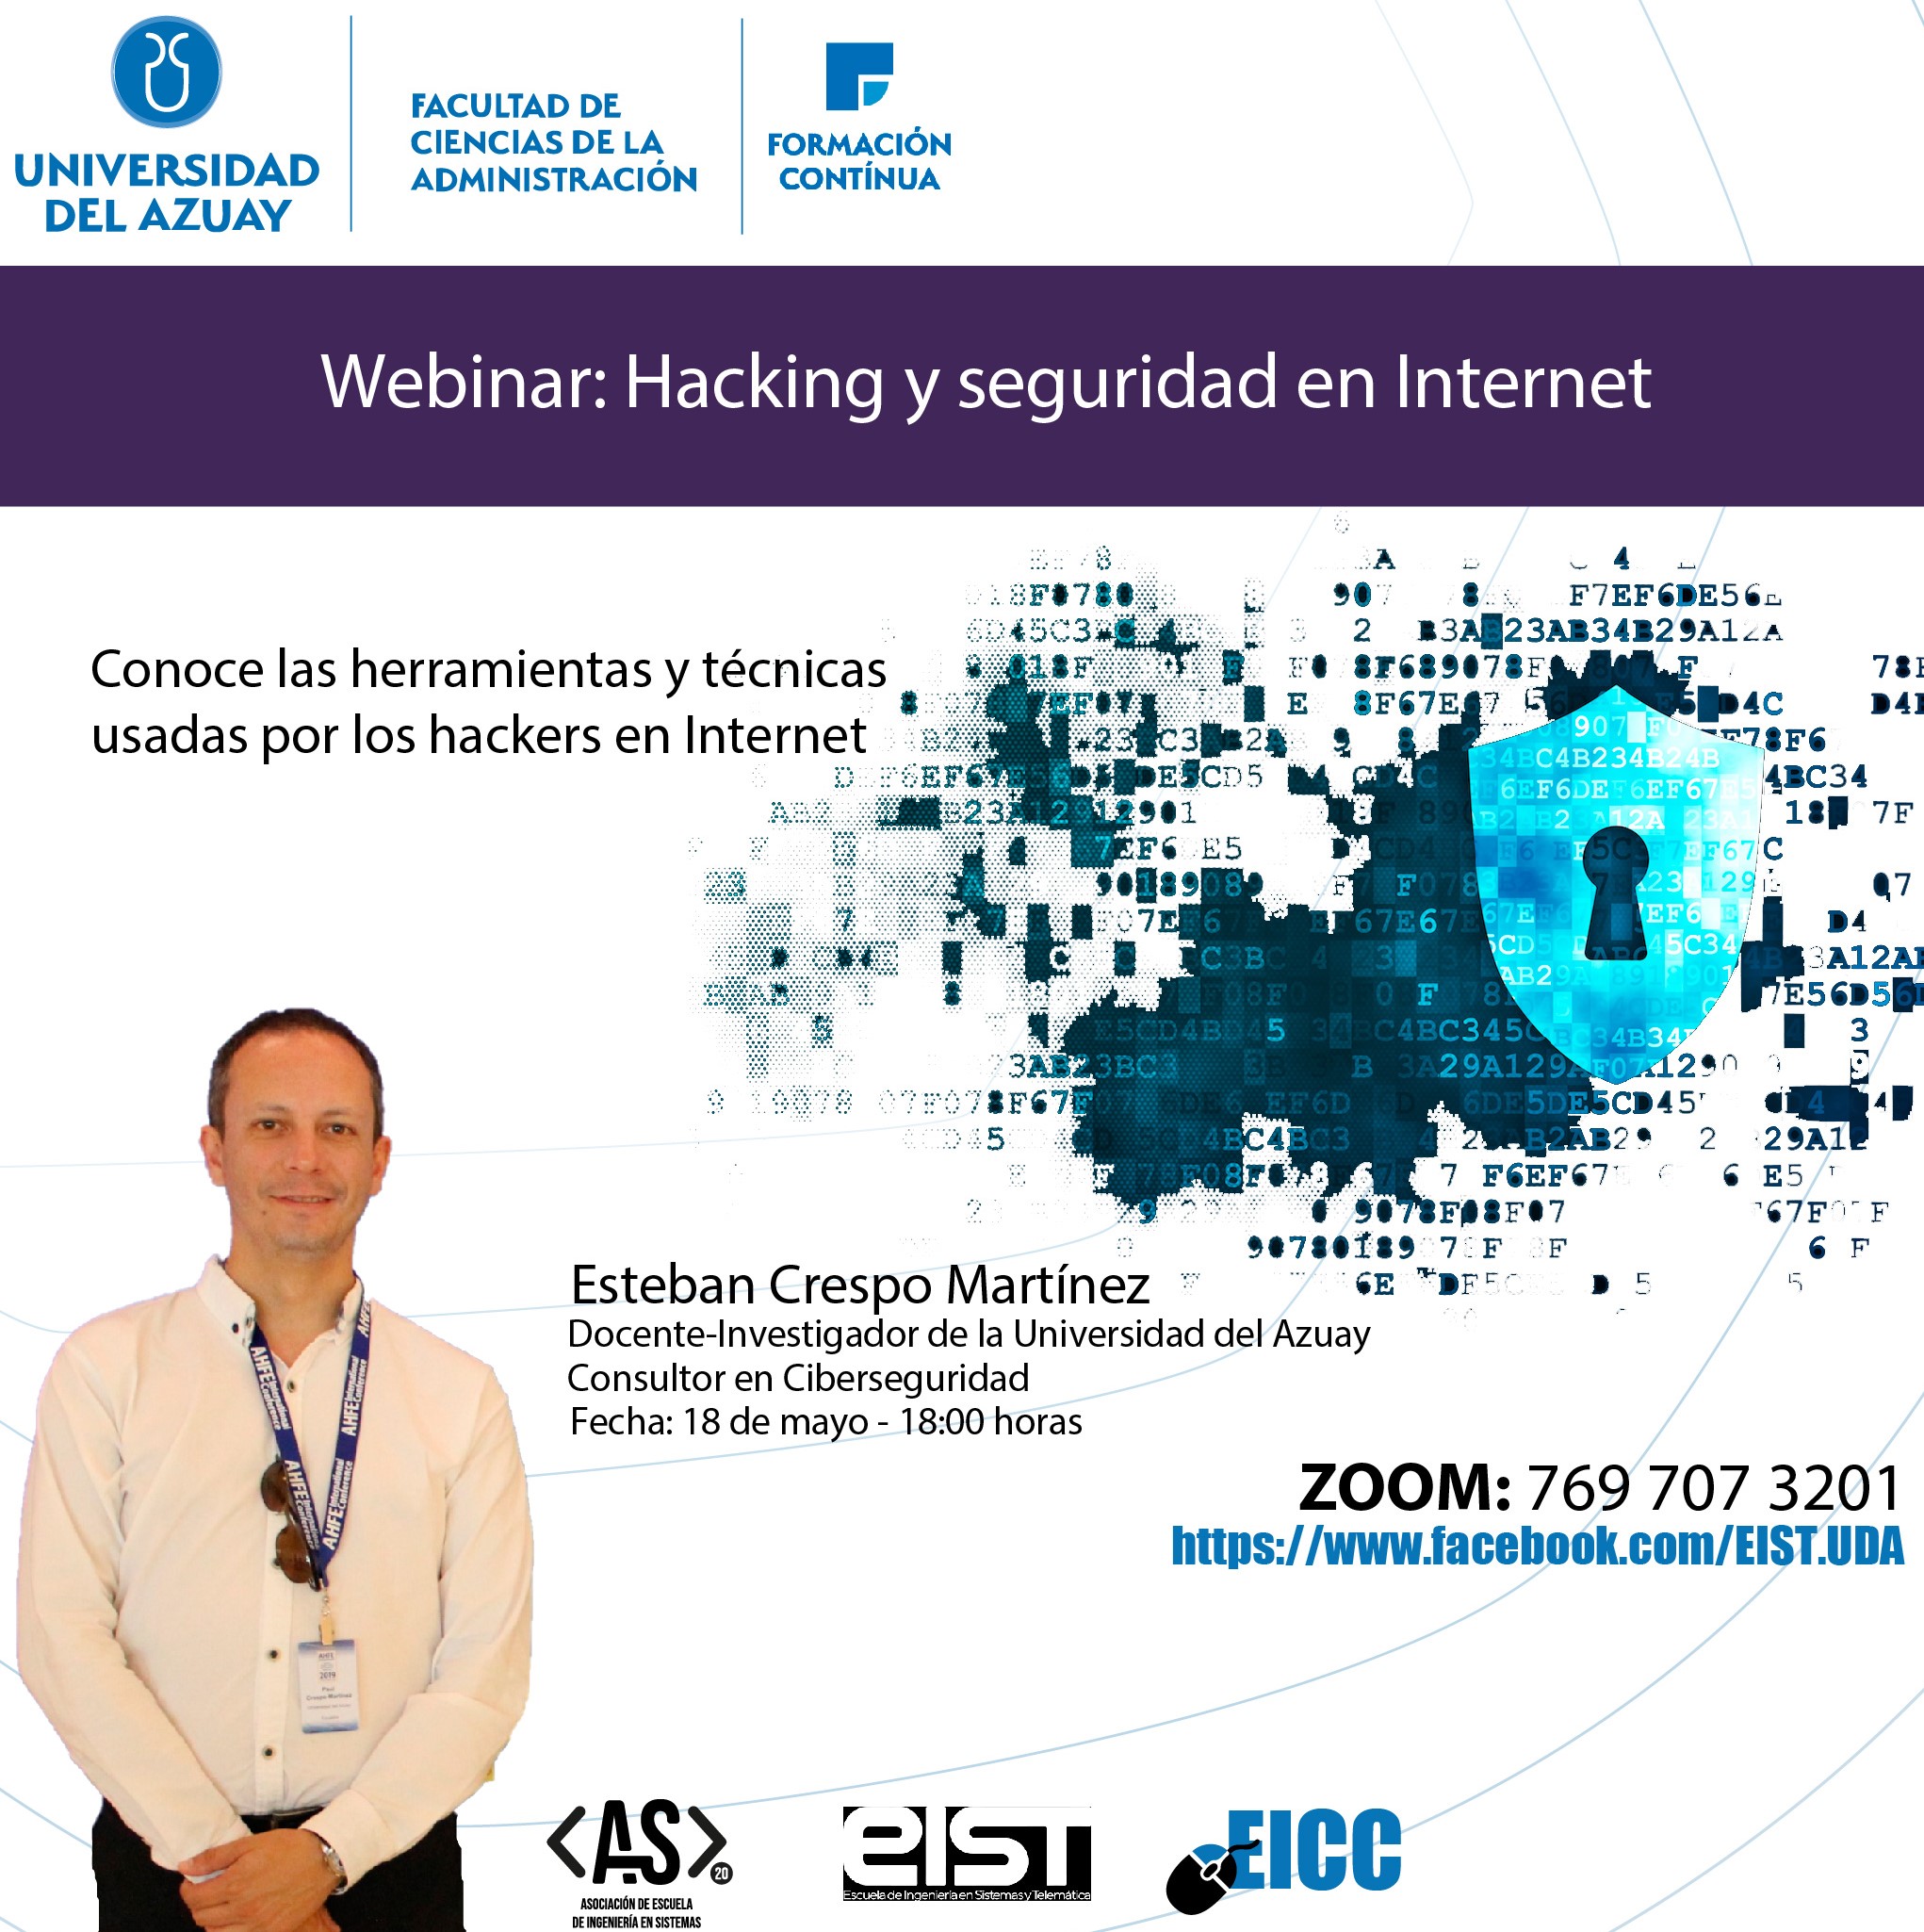 Webminar "Hacking y seguridad en Internet"